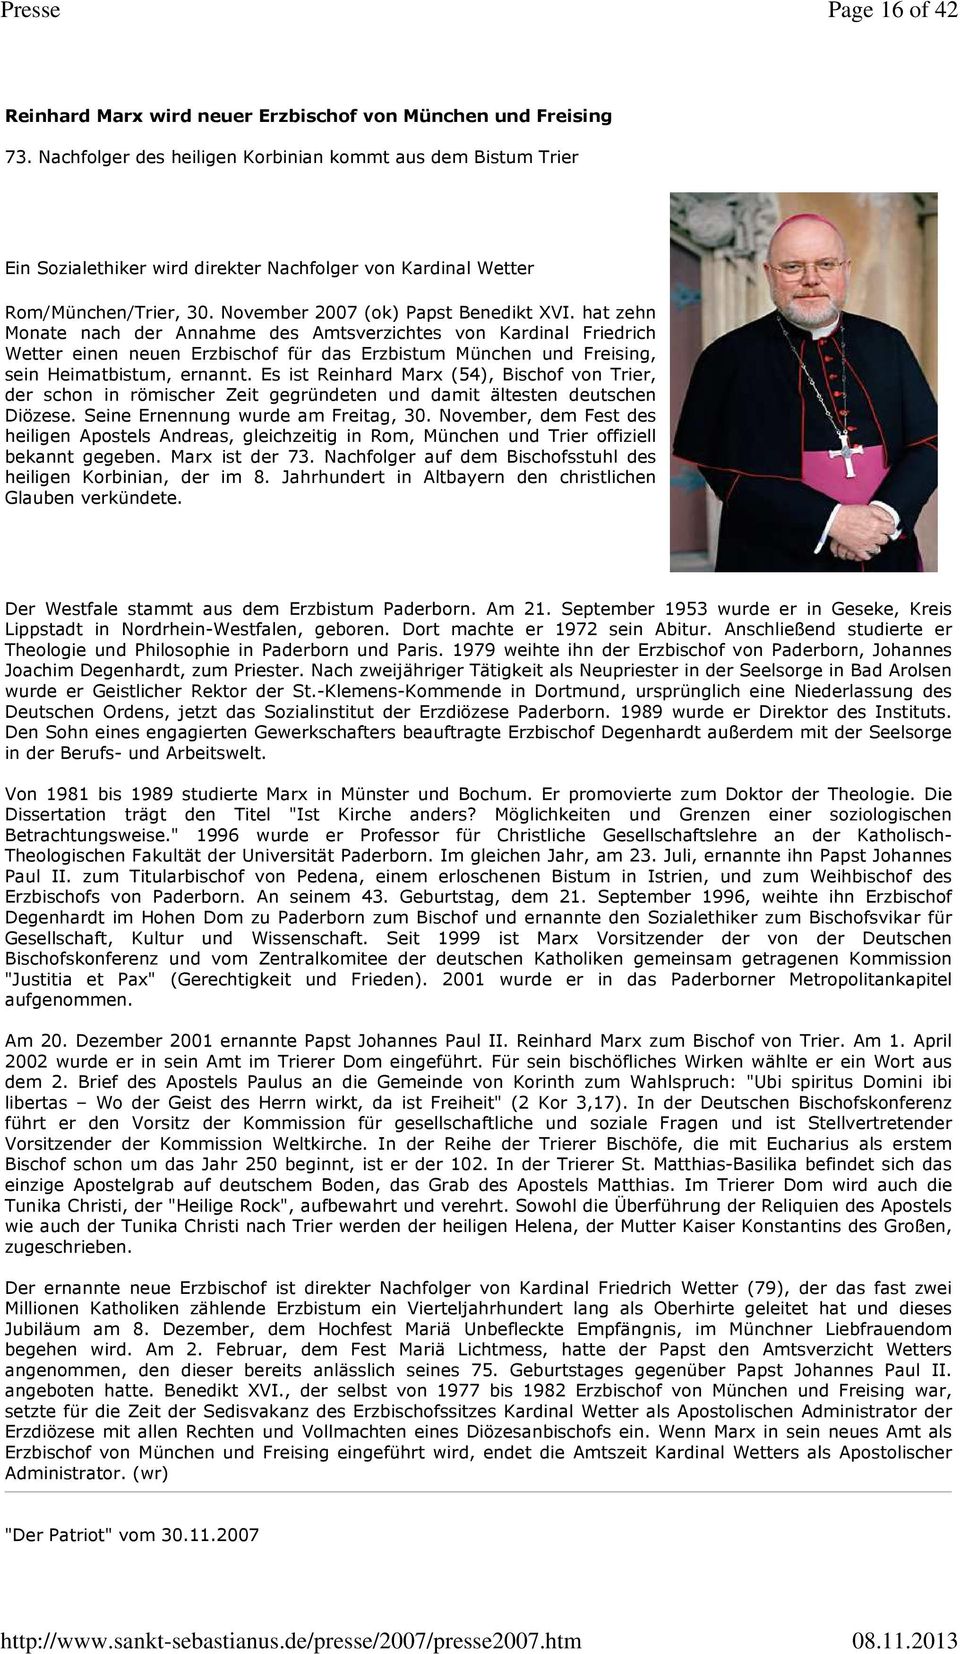 hat zehn Monate nach der Annahme des Amtsverzichtes von Kardinal Friedrich Wetter einen neuen Erzbischof für das Erzbistum München und Freising, sein Heimatbistum, ernannt.